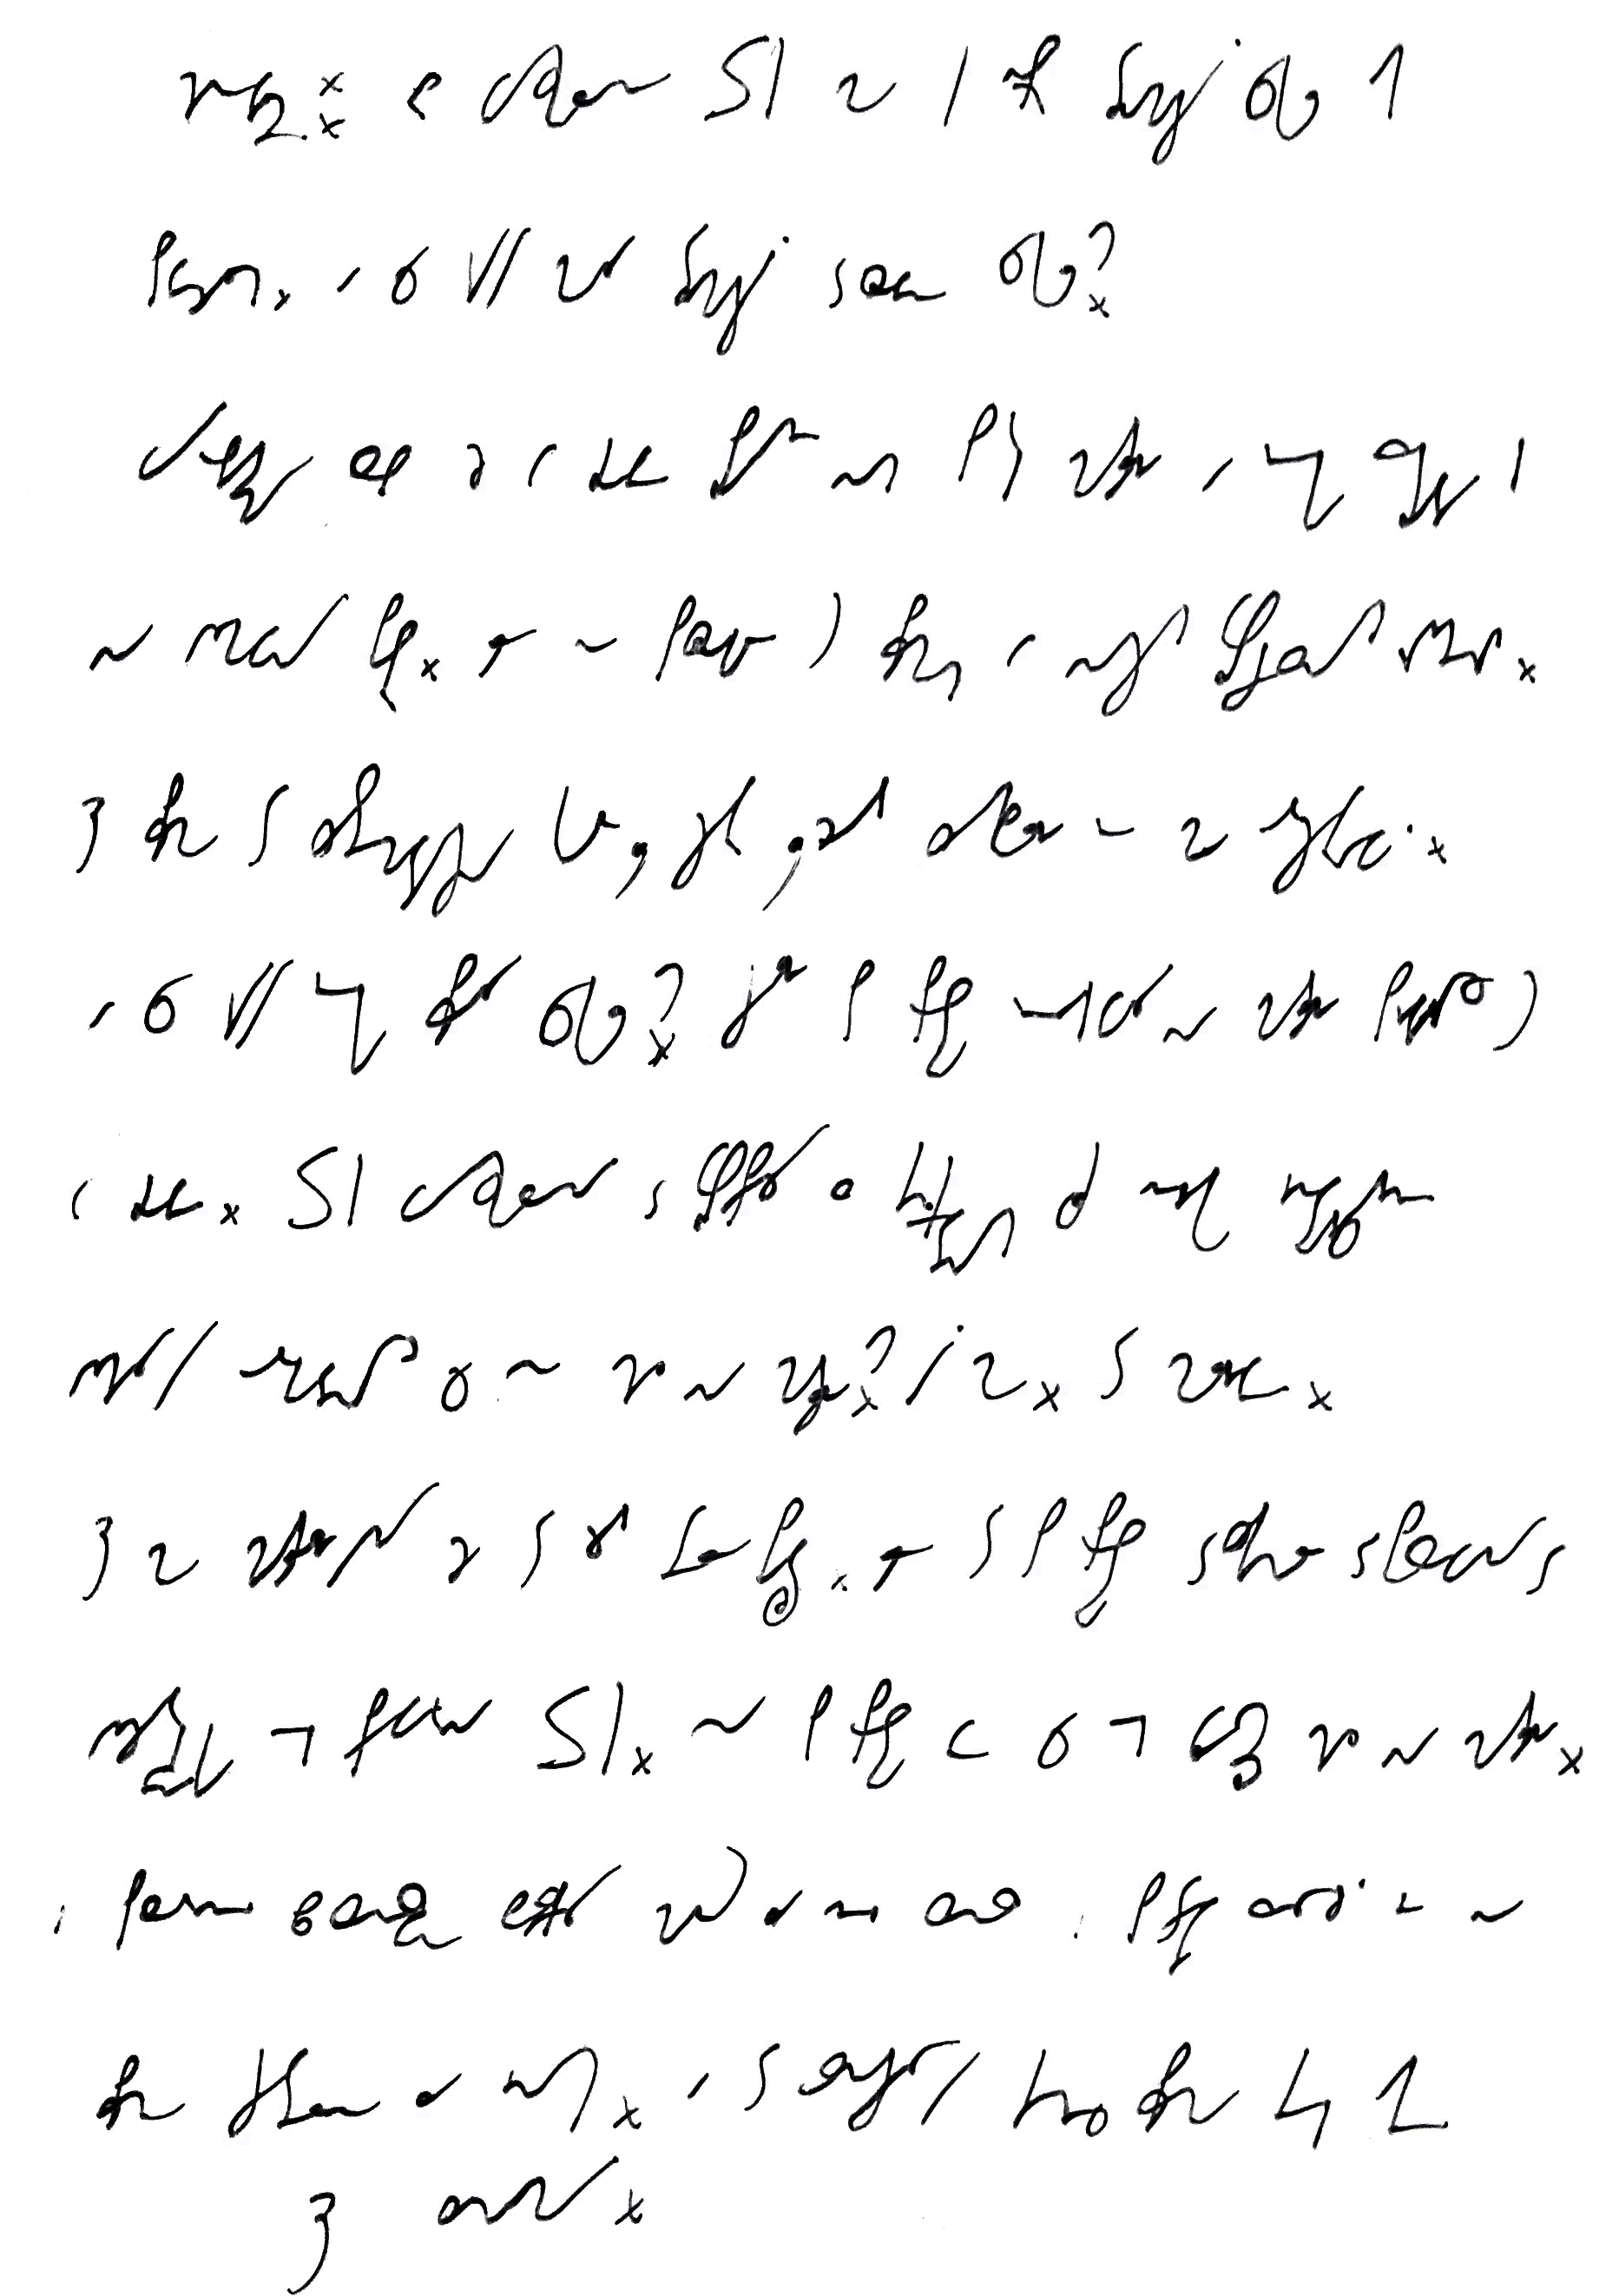 Druga kartka wpisu zapisana pismem stenograficznym, tłumaczenie w tekście wpisu